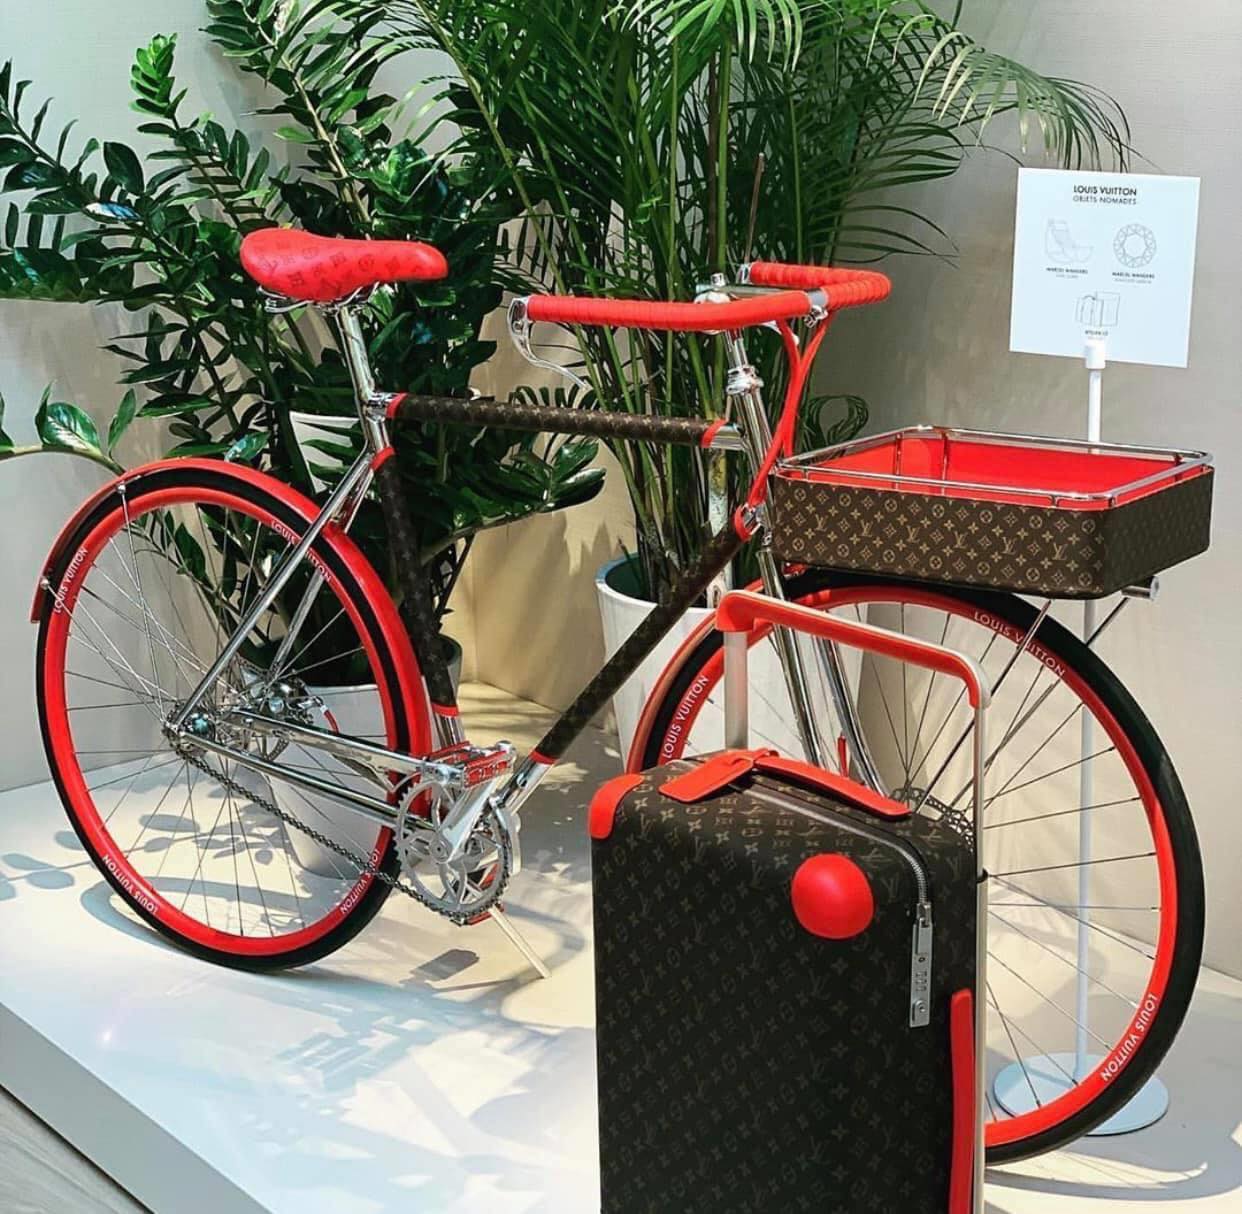 "Siêu xe đạp" của Louis Vuitton có mức giá 28.900 USD.